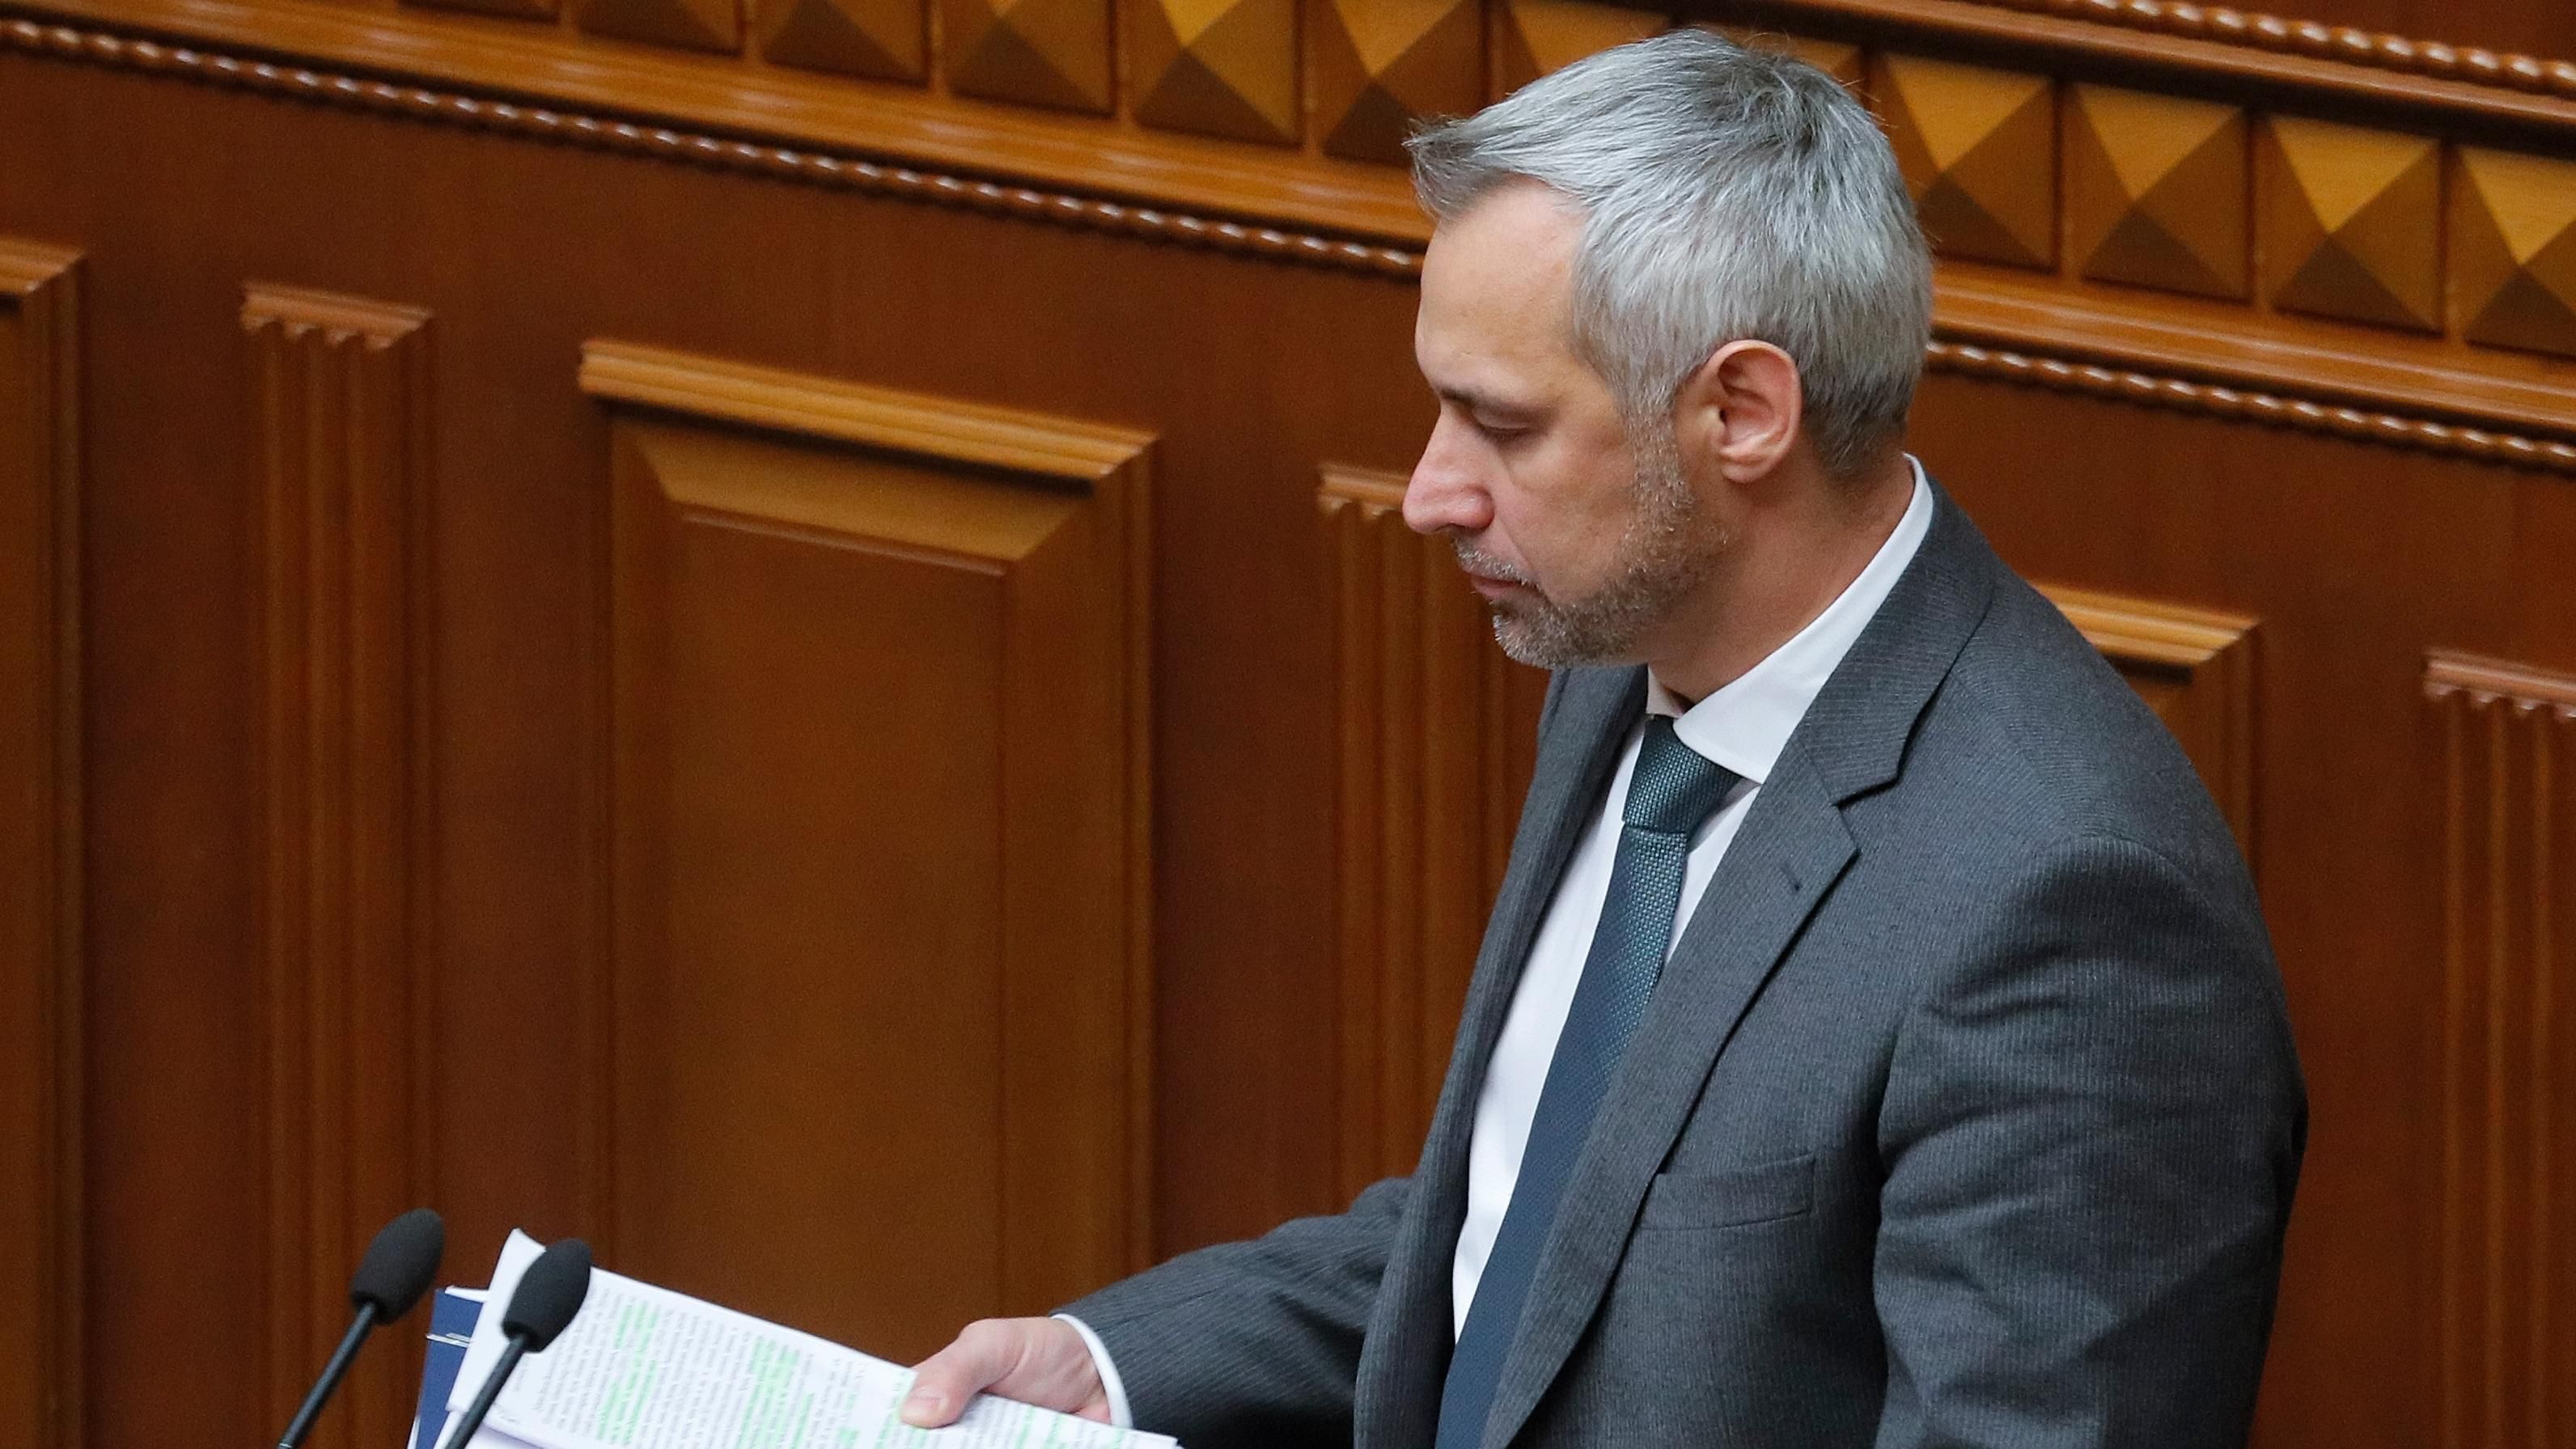 Рябошапка опроверг причину своей отставки, которую называли в "Слуге народа"